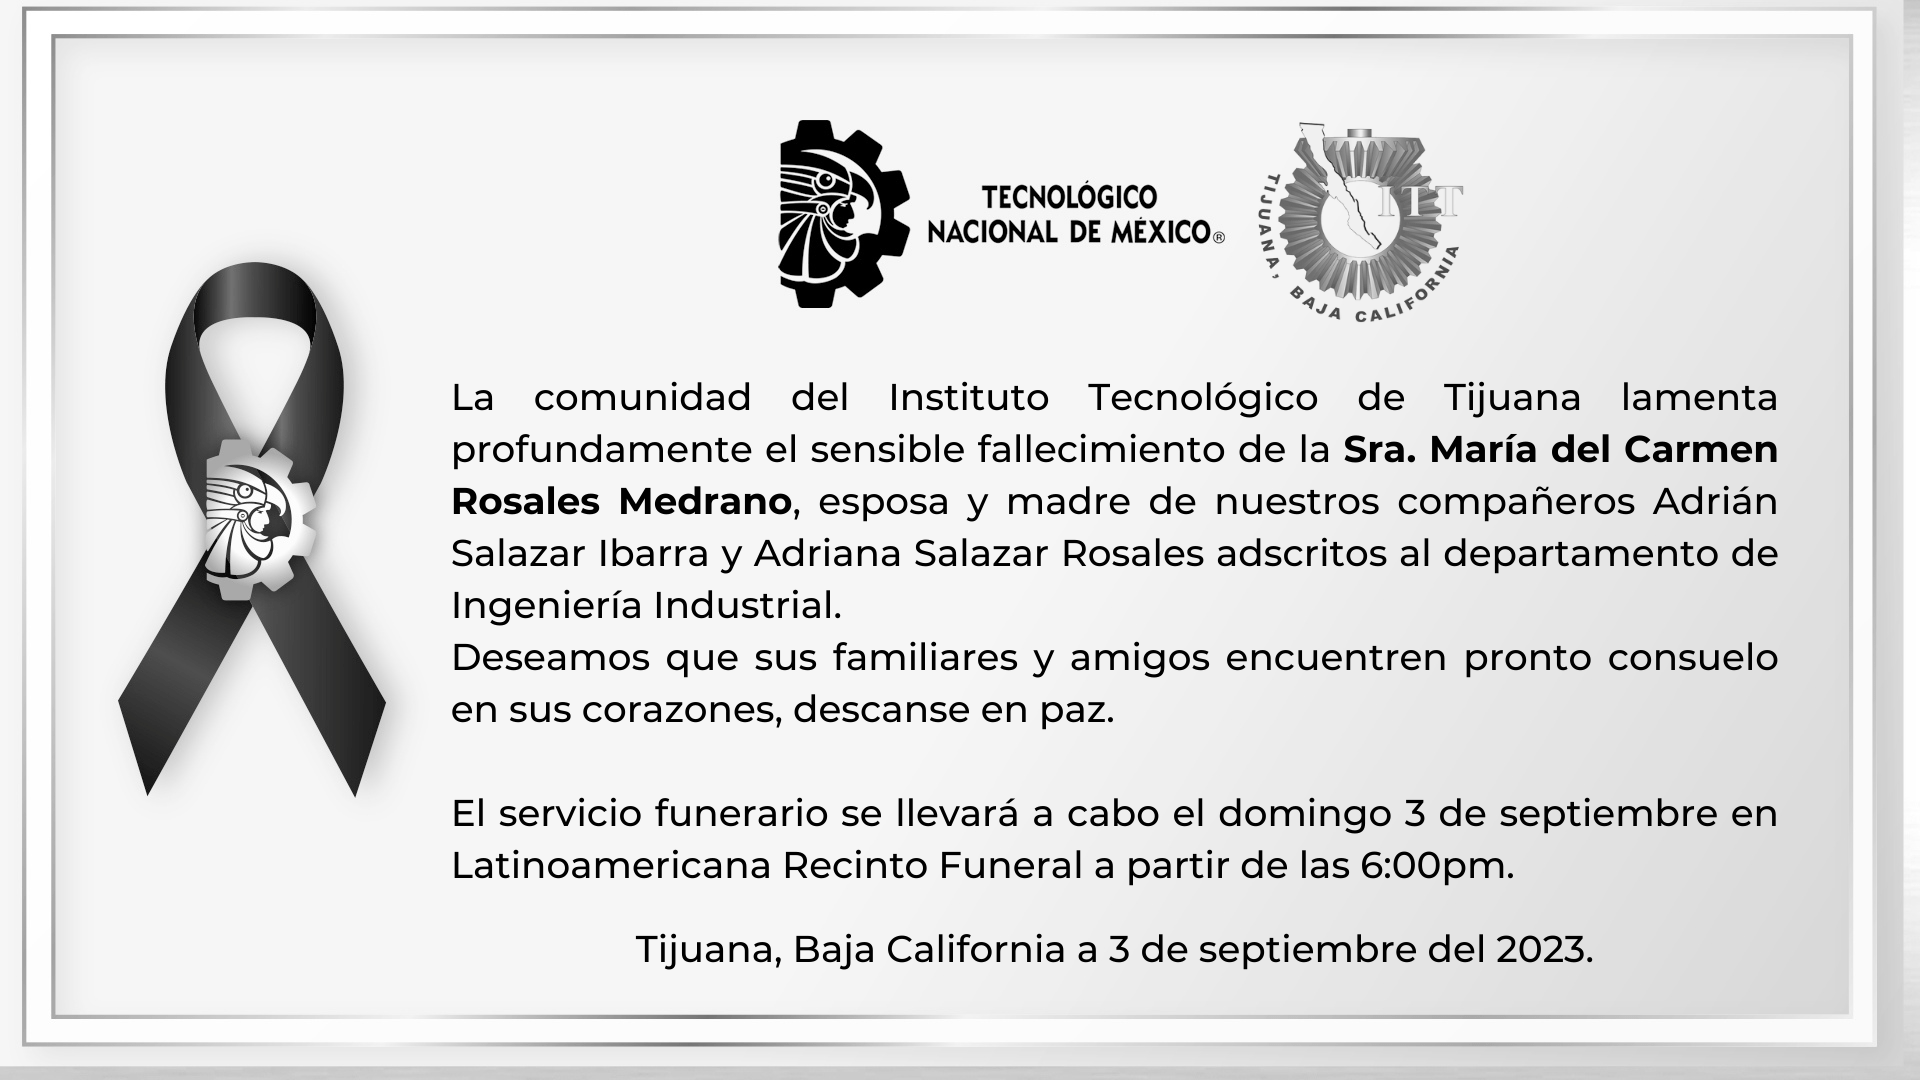 La comunidad del Instituto Tecnológico de Tijuana lamenta profundamente el sensible fallecimiento de la Sra. María del Carmen Rosales Medrano